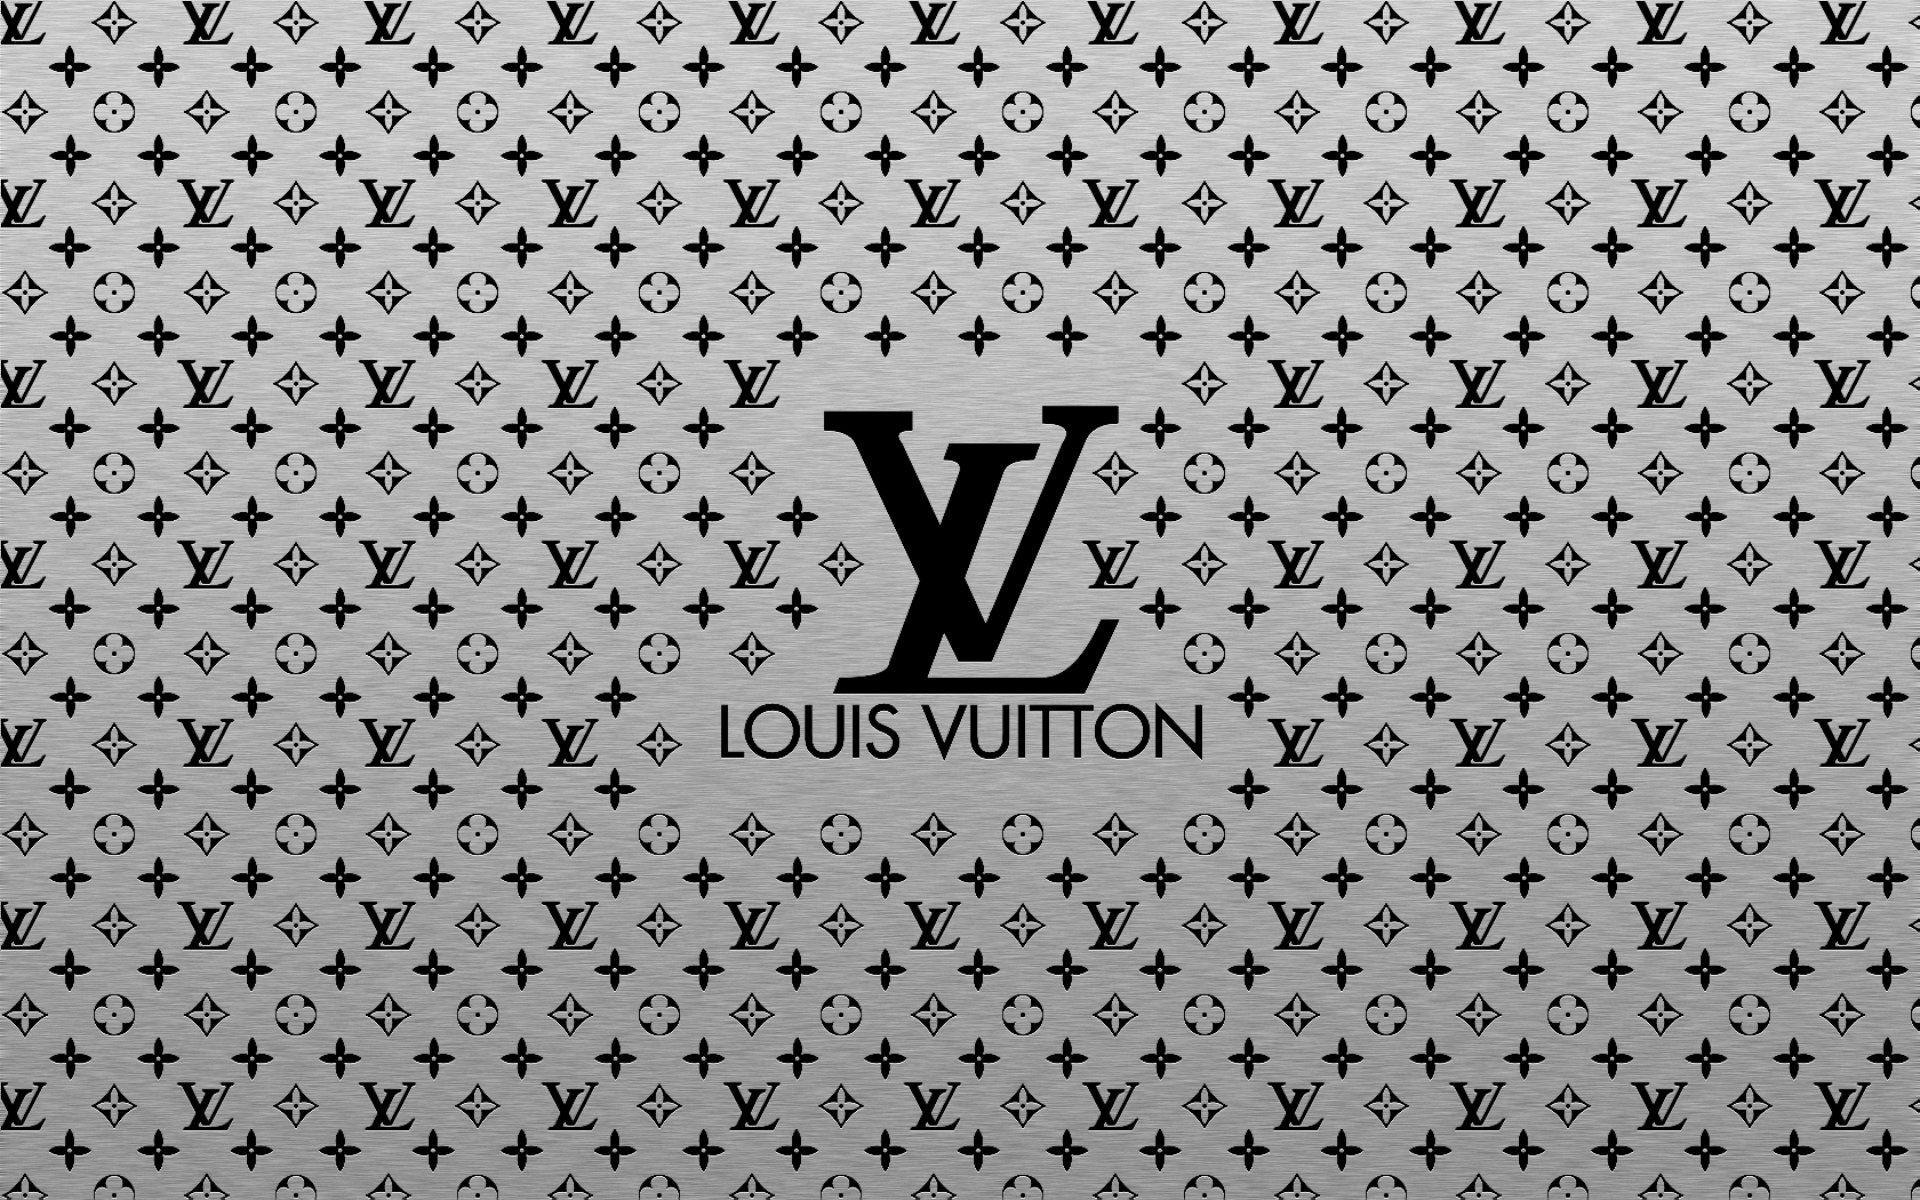 Chia Sẻ 99 Ảnh Nền Louis Vuitton Đẹp Sang Trọng Ấn Tượng Bậc Nhất  Top 10  Hà Nội